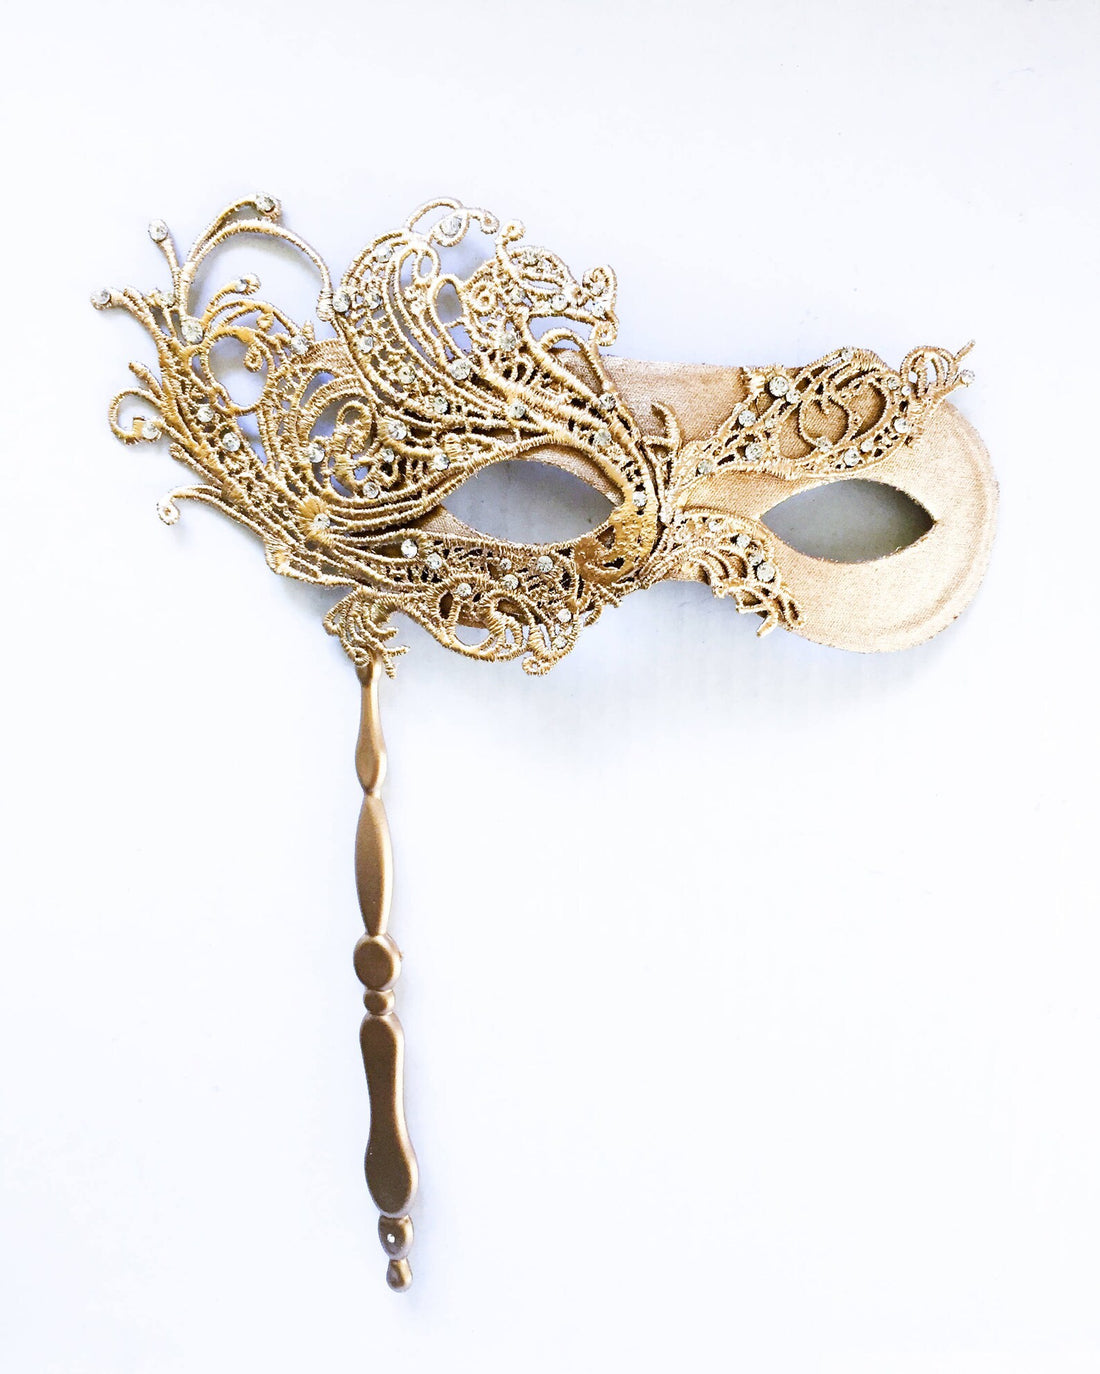 hophen Hophen Hand Held Venetian Masquerade Mask on a Stick